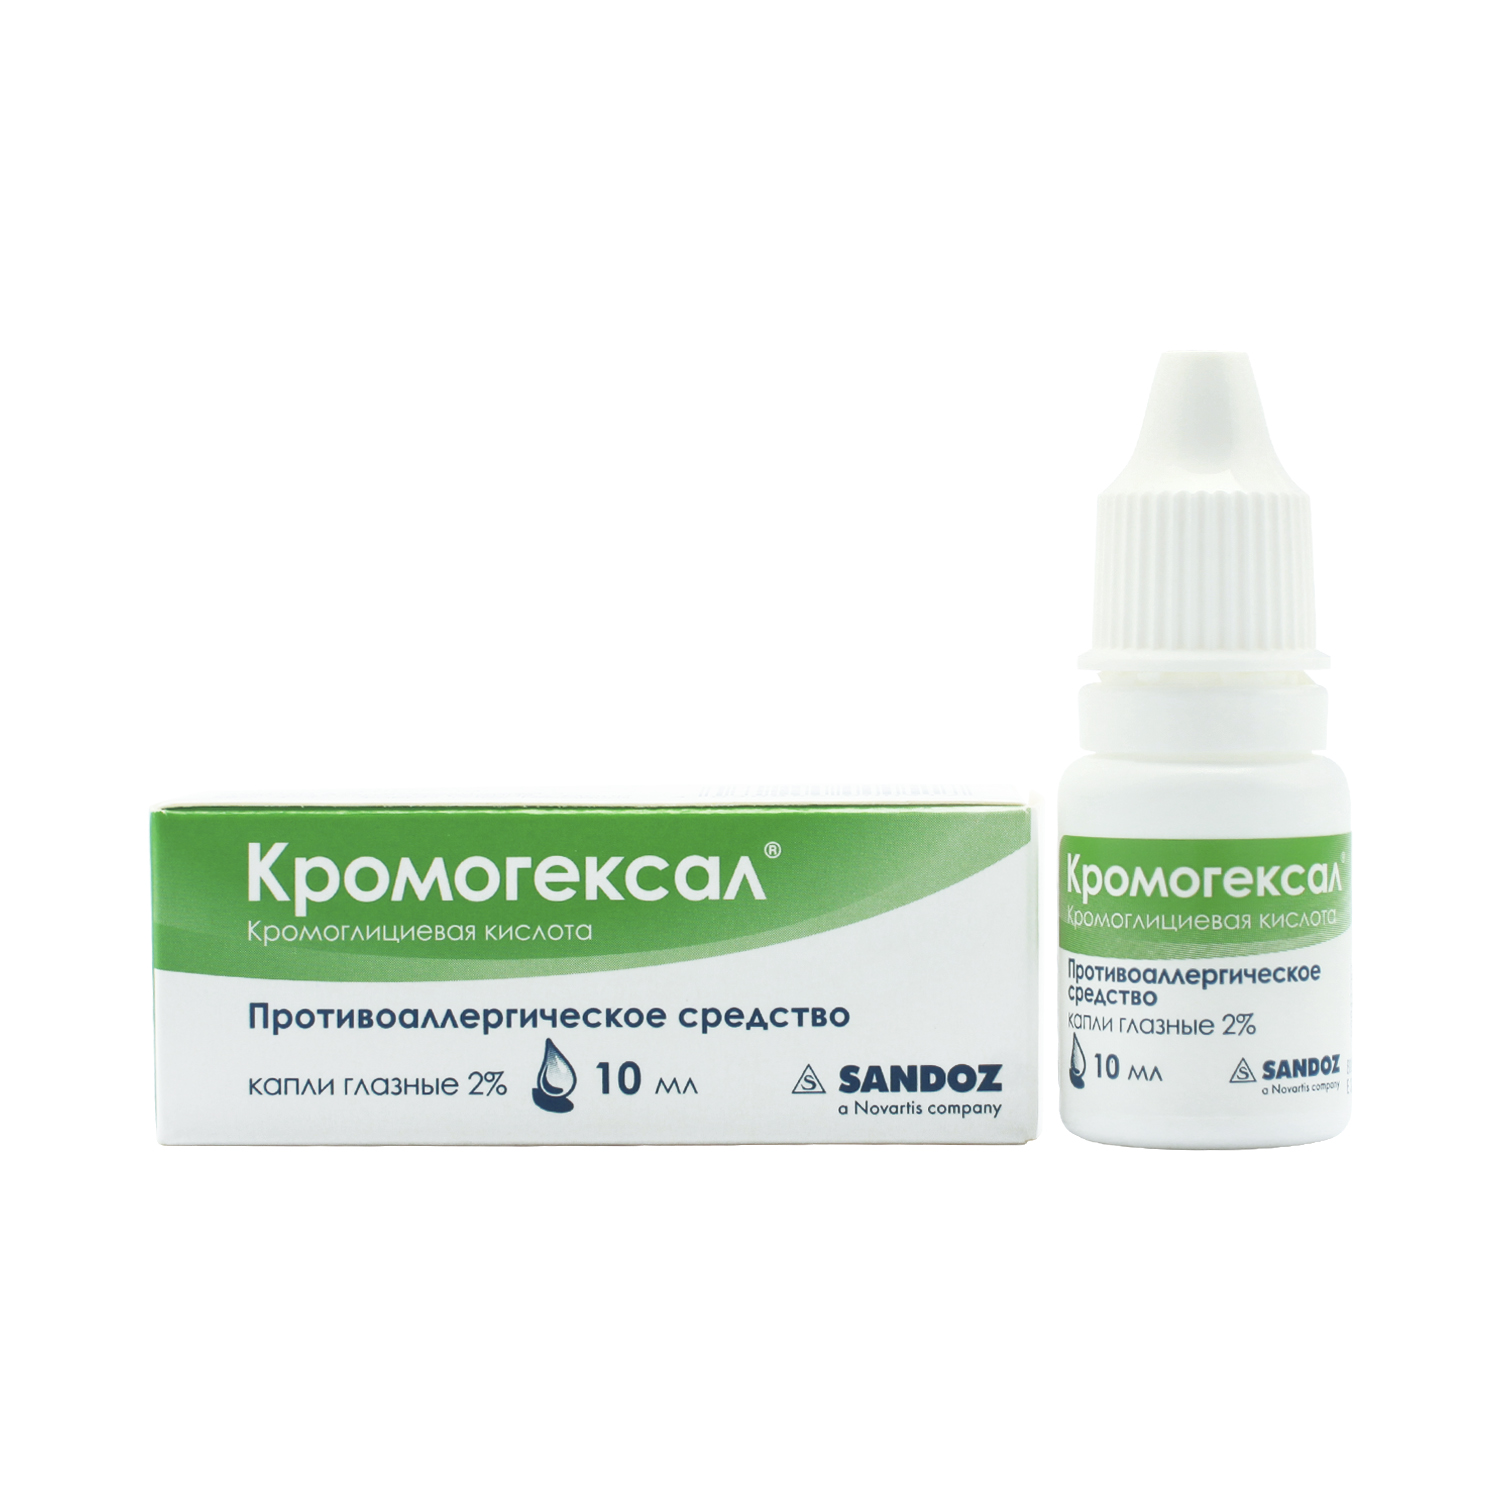 Кромогексал глазные капли 2% 10мл  в Санкт-Петербурге, цена 0,0 .